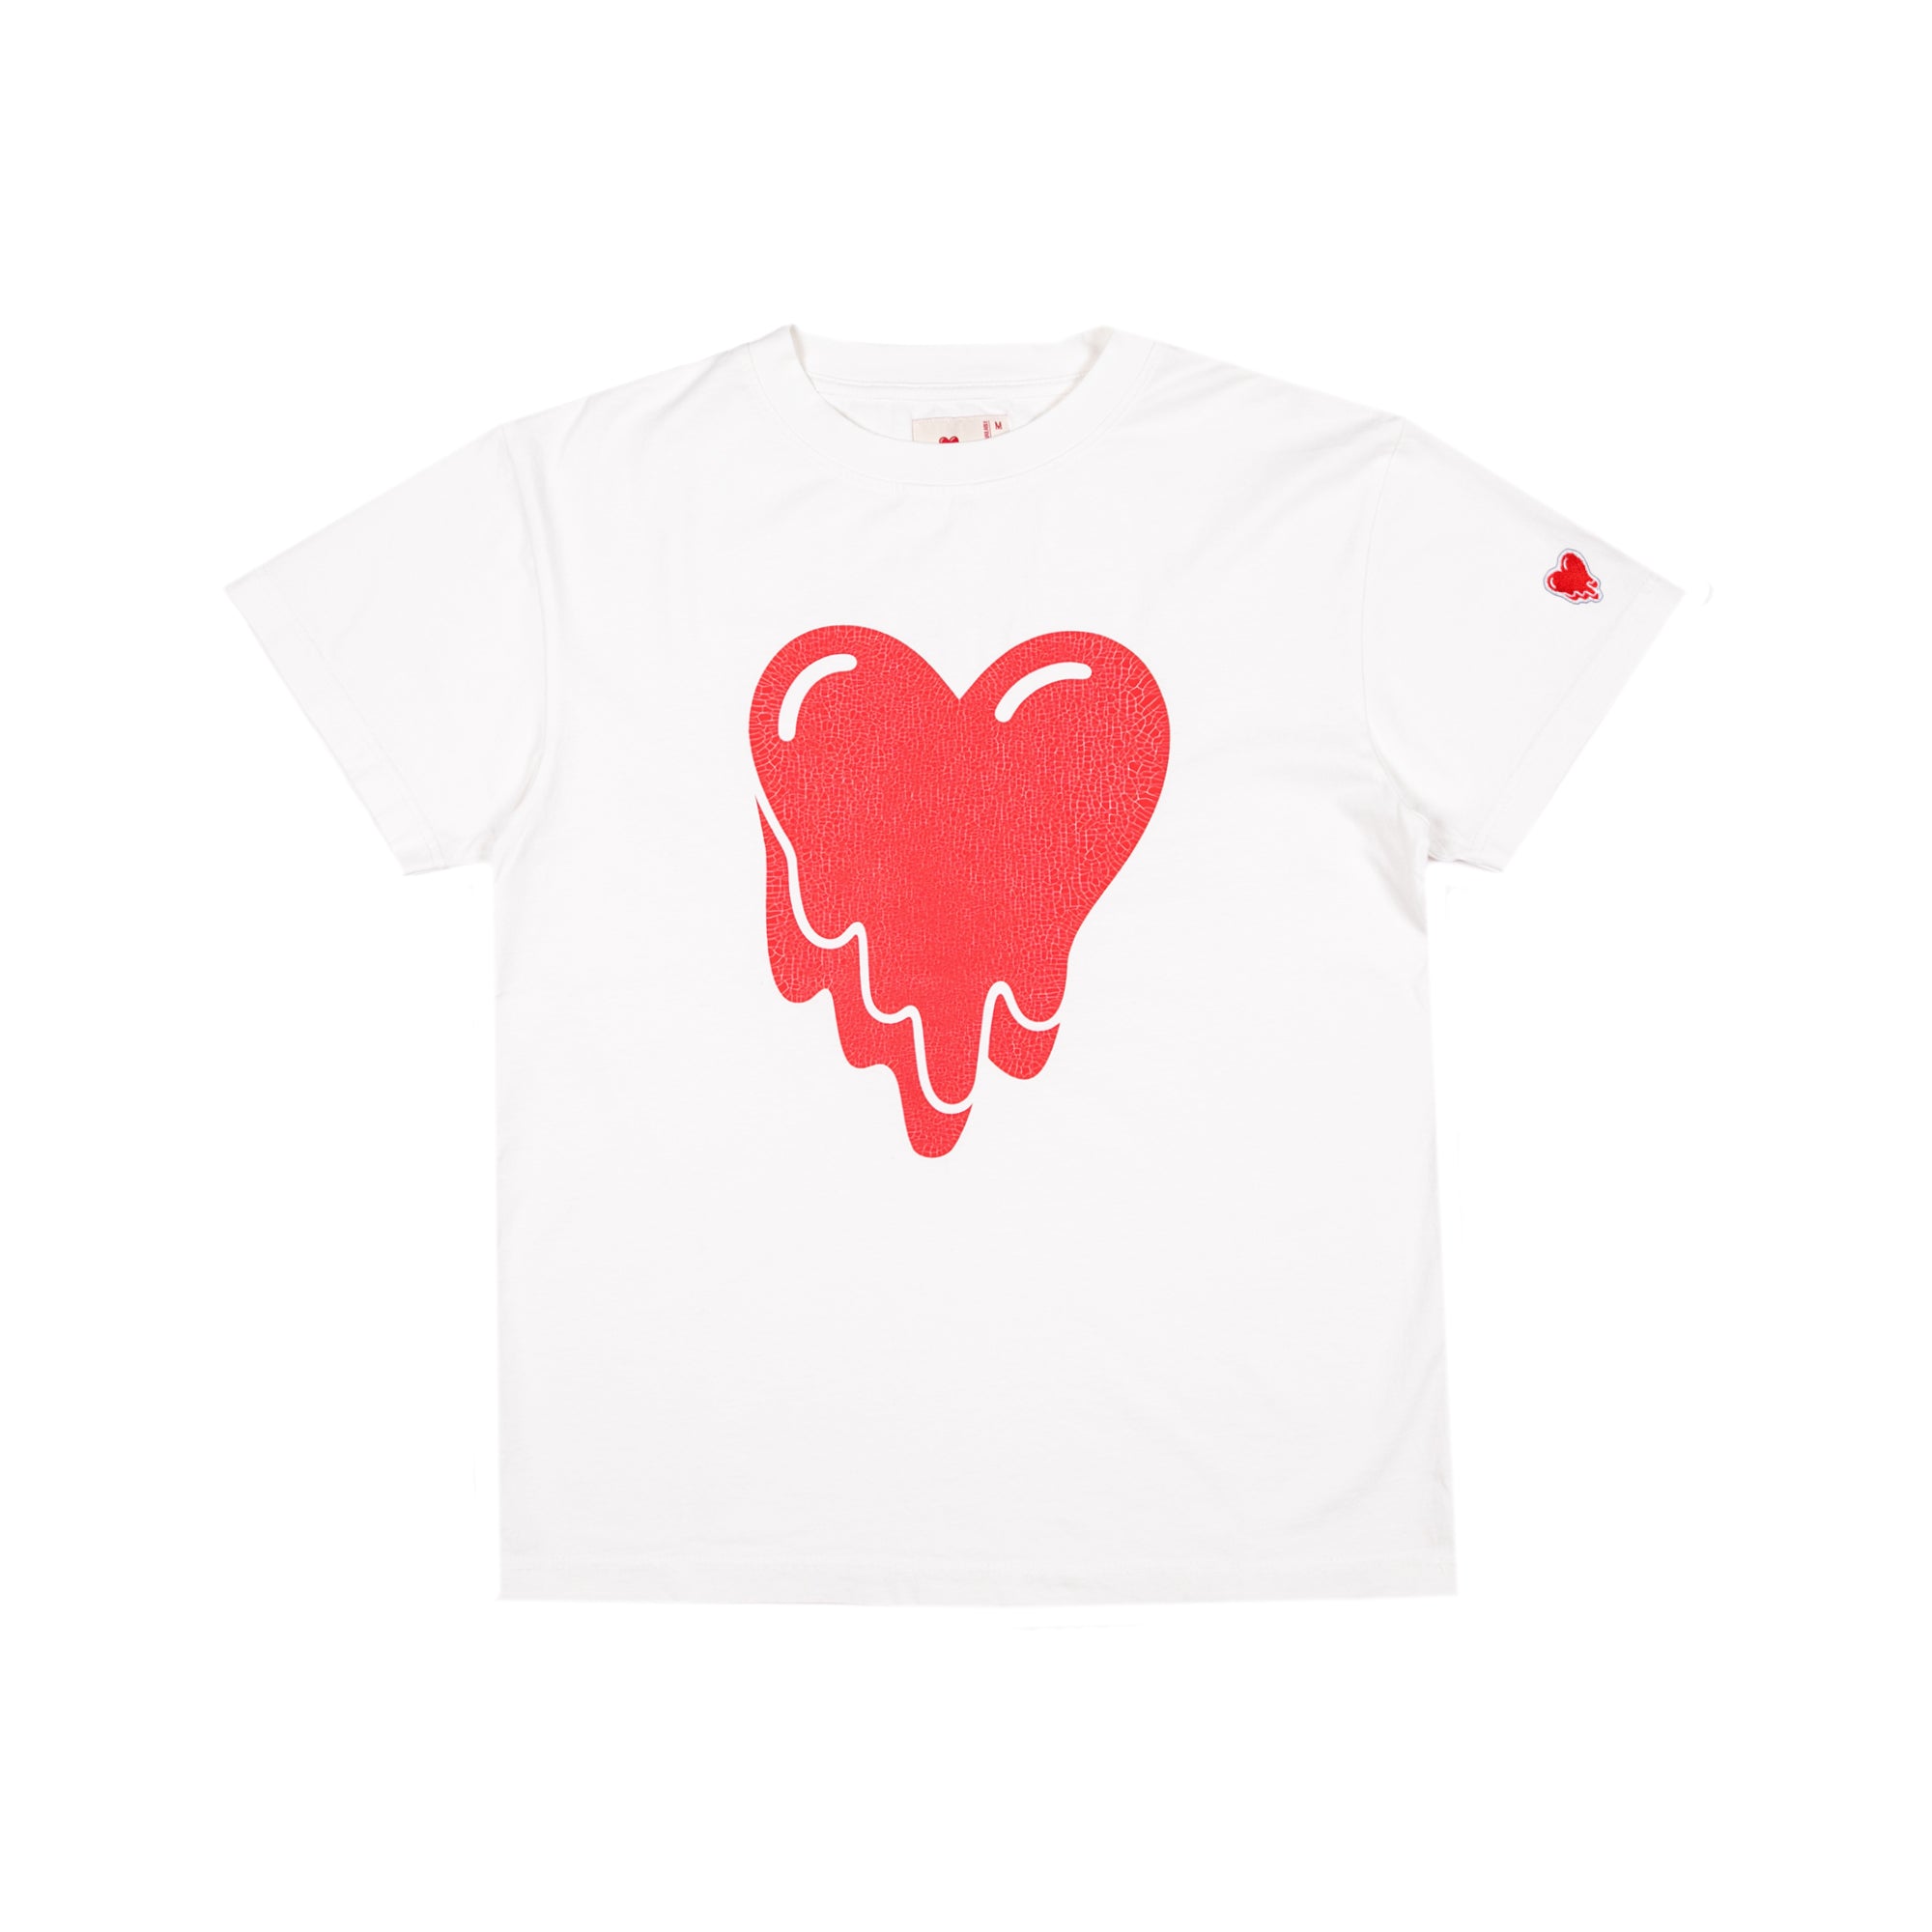 Heart logo tee - White